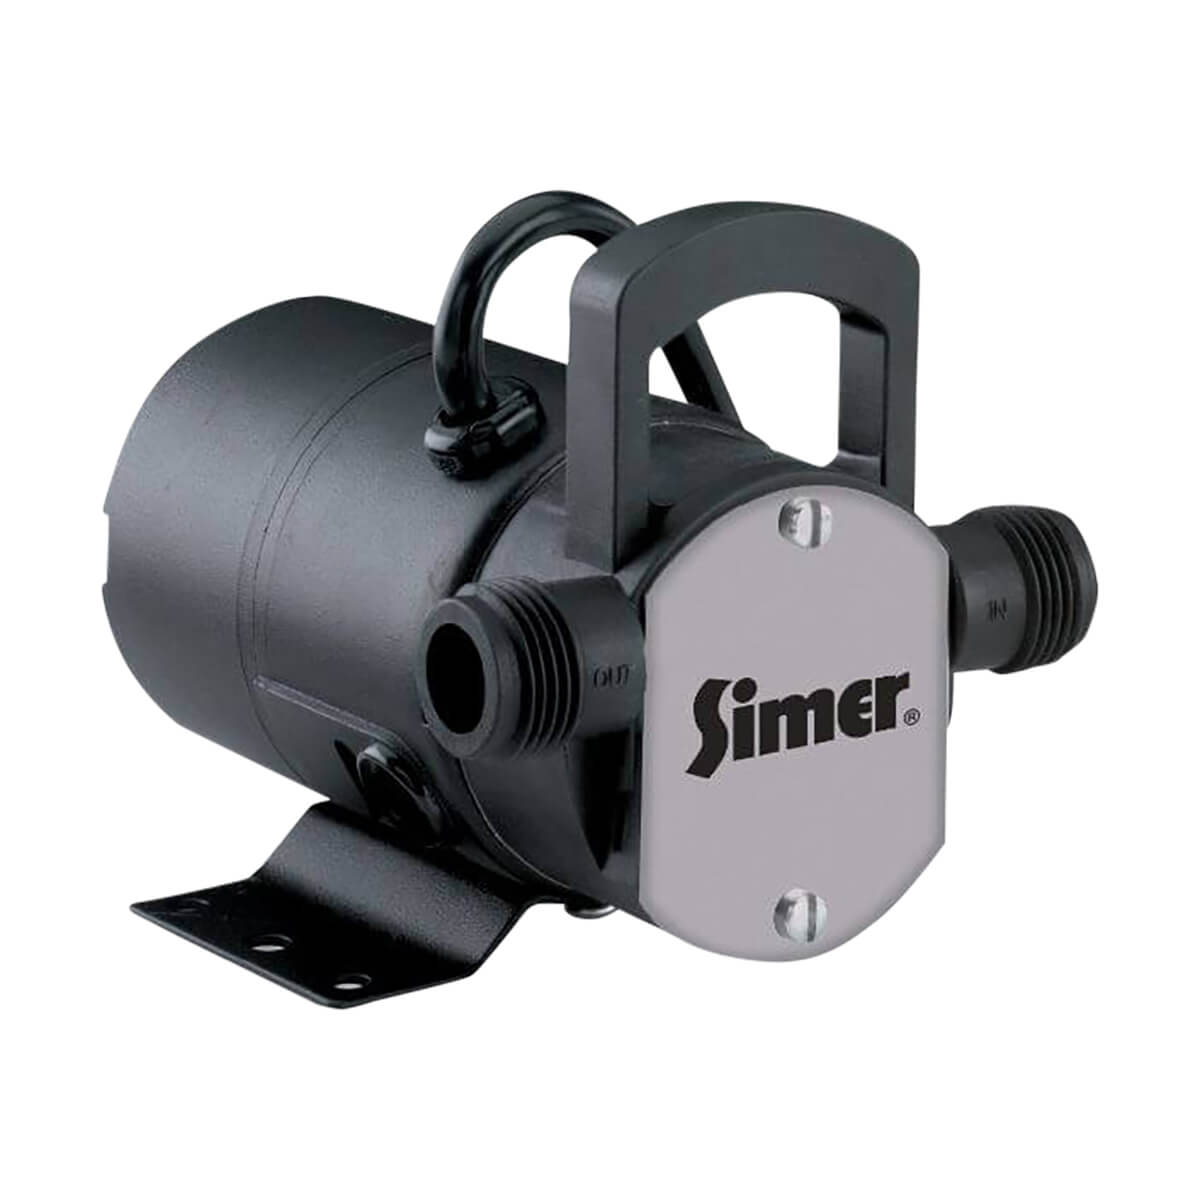 Simer 115V Mini-Vac Utility Pump